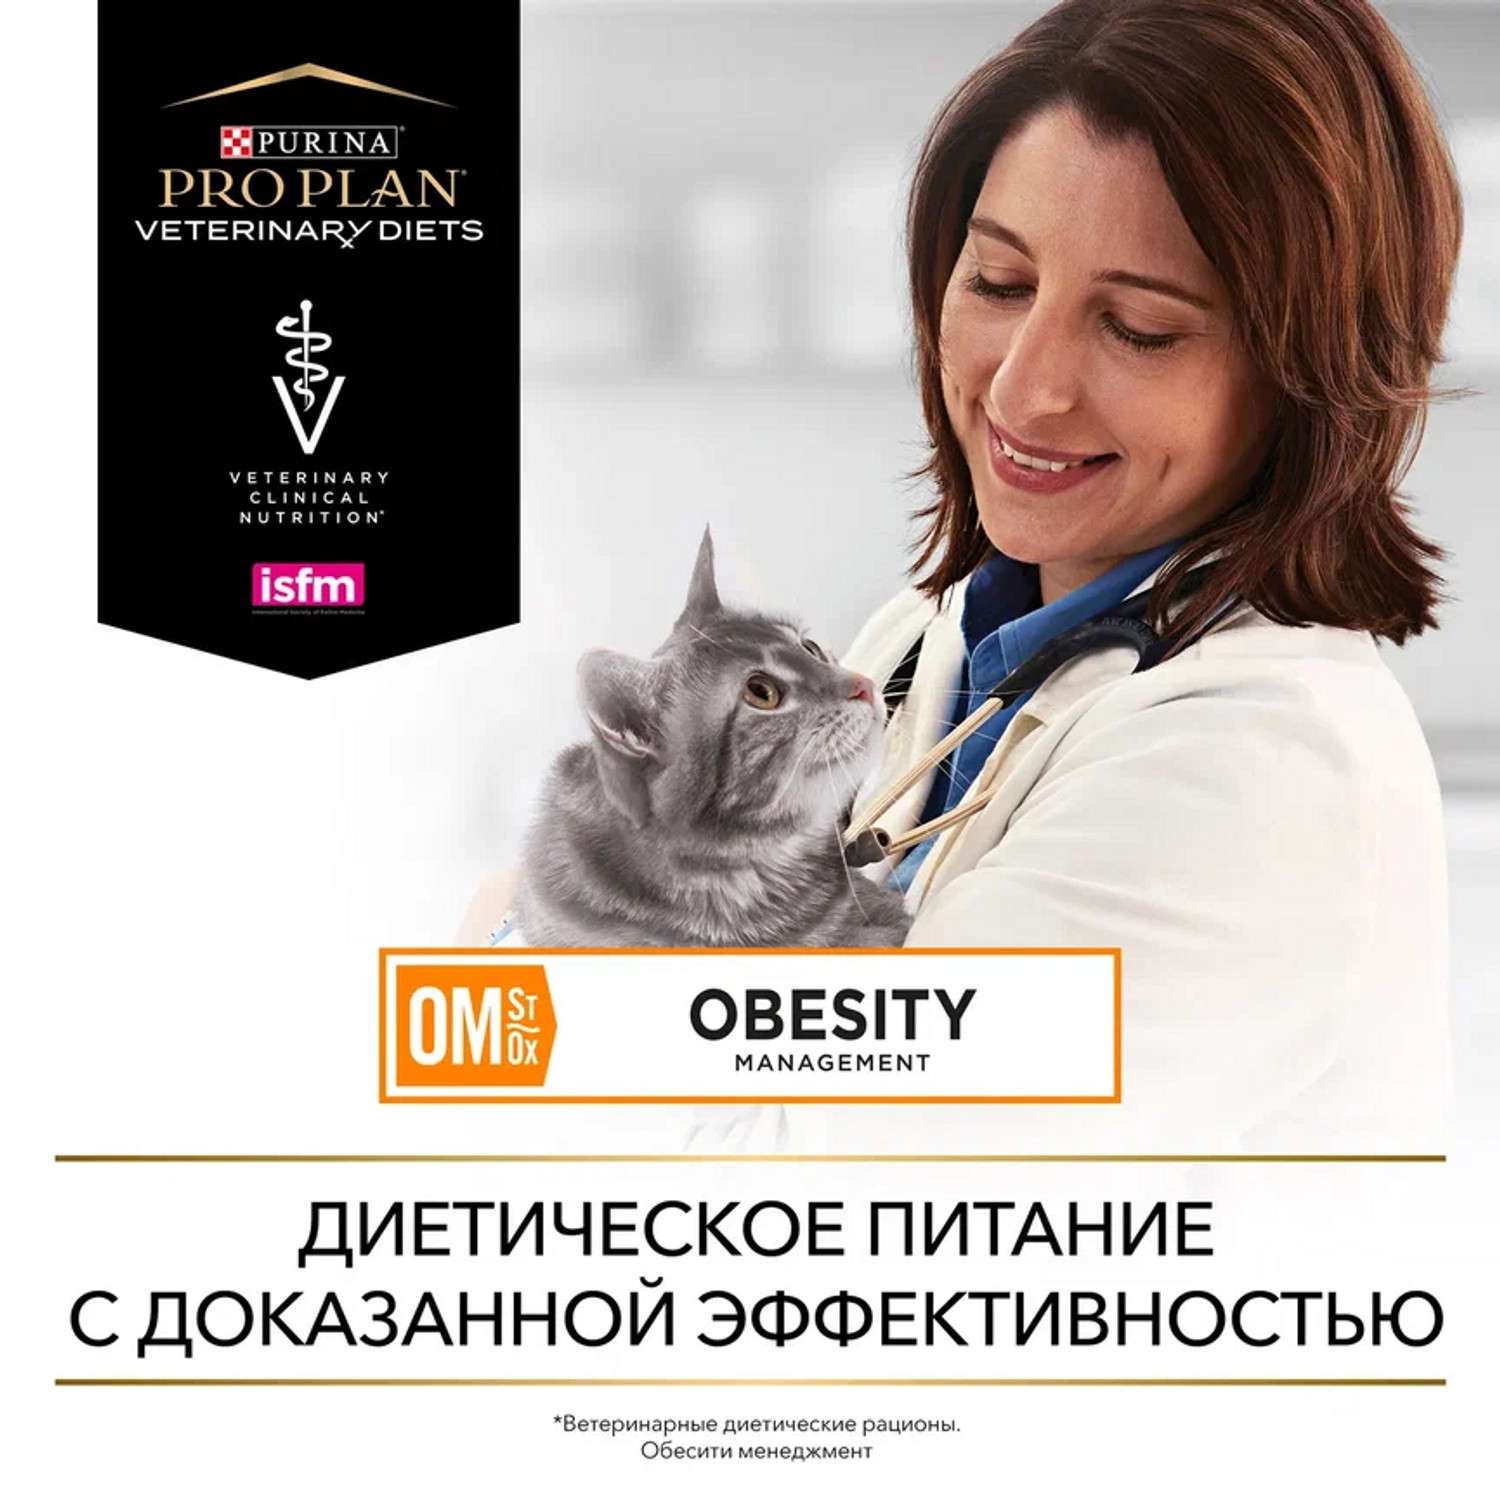 Корм для кошек Purina Pro Plan Veterinary diets OM St/Ox Obesity Mangement для снижения избыточной массы тела сухой 350г - фото 12